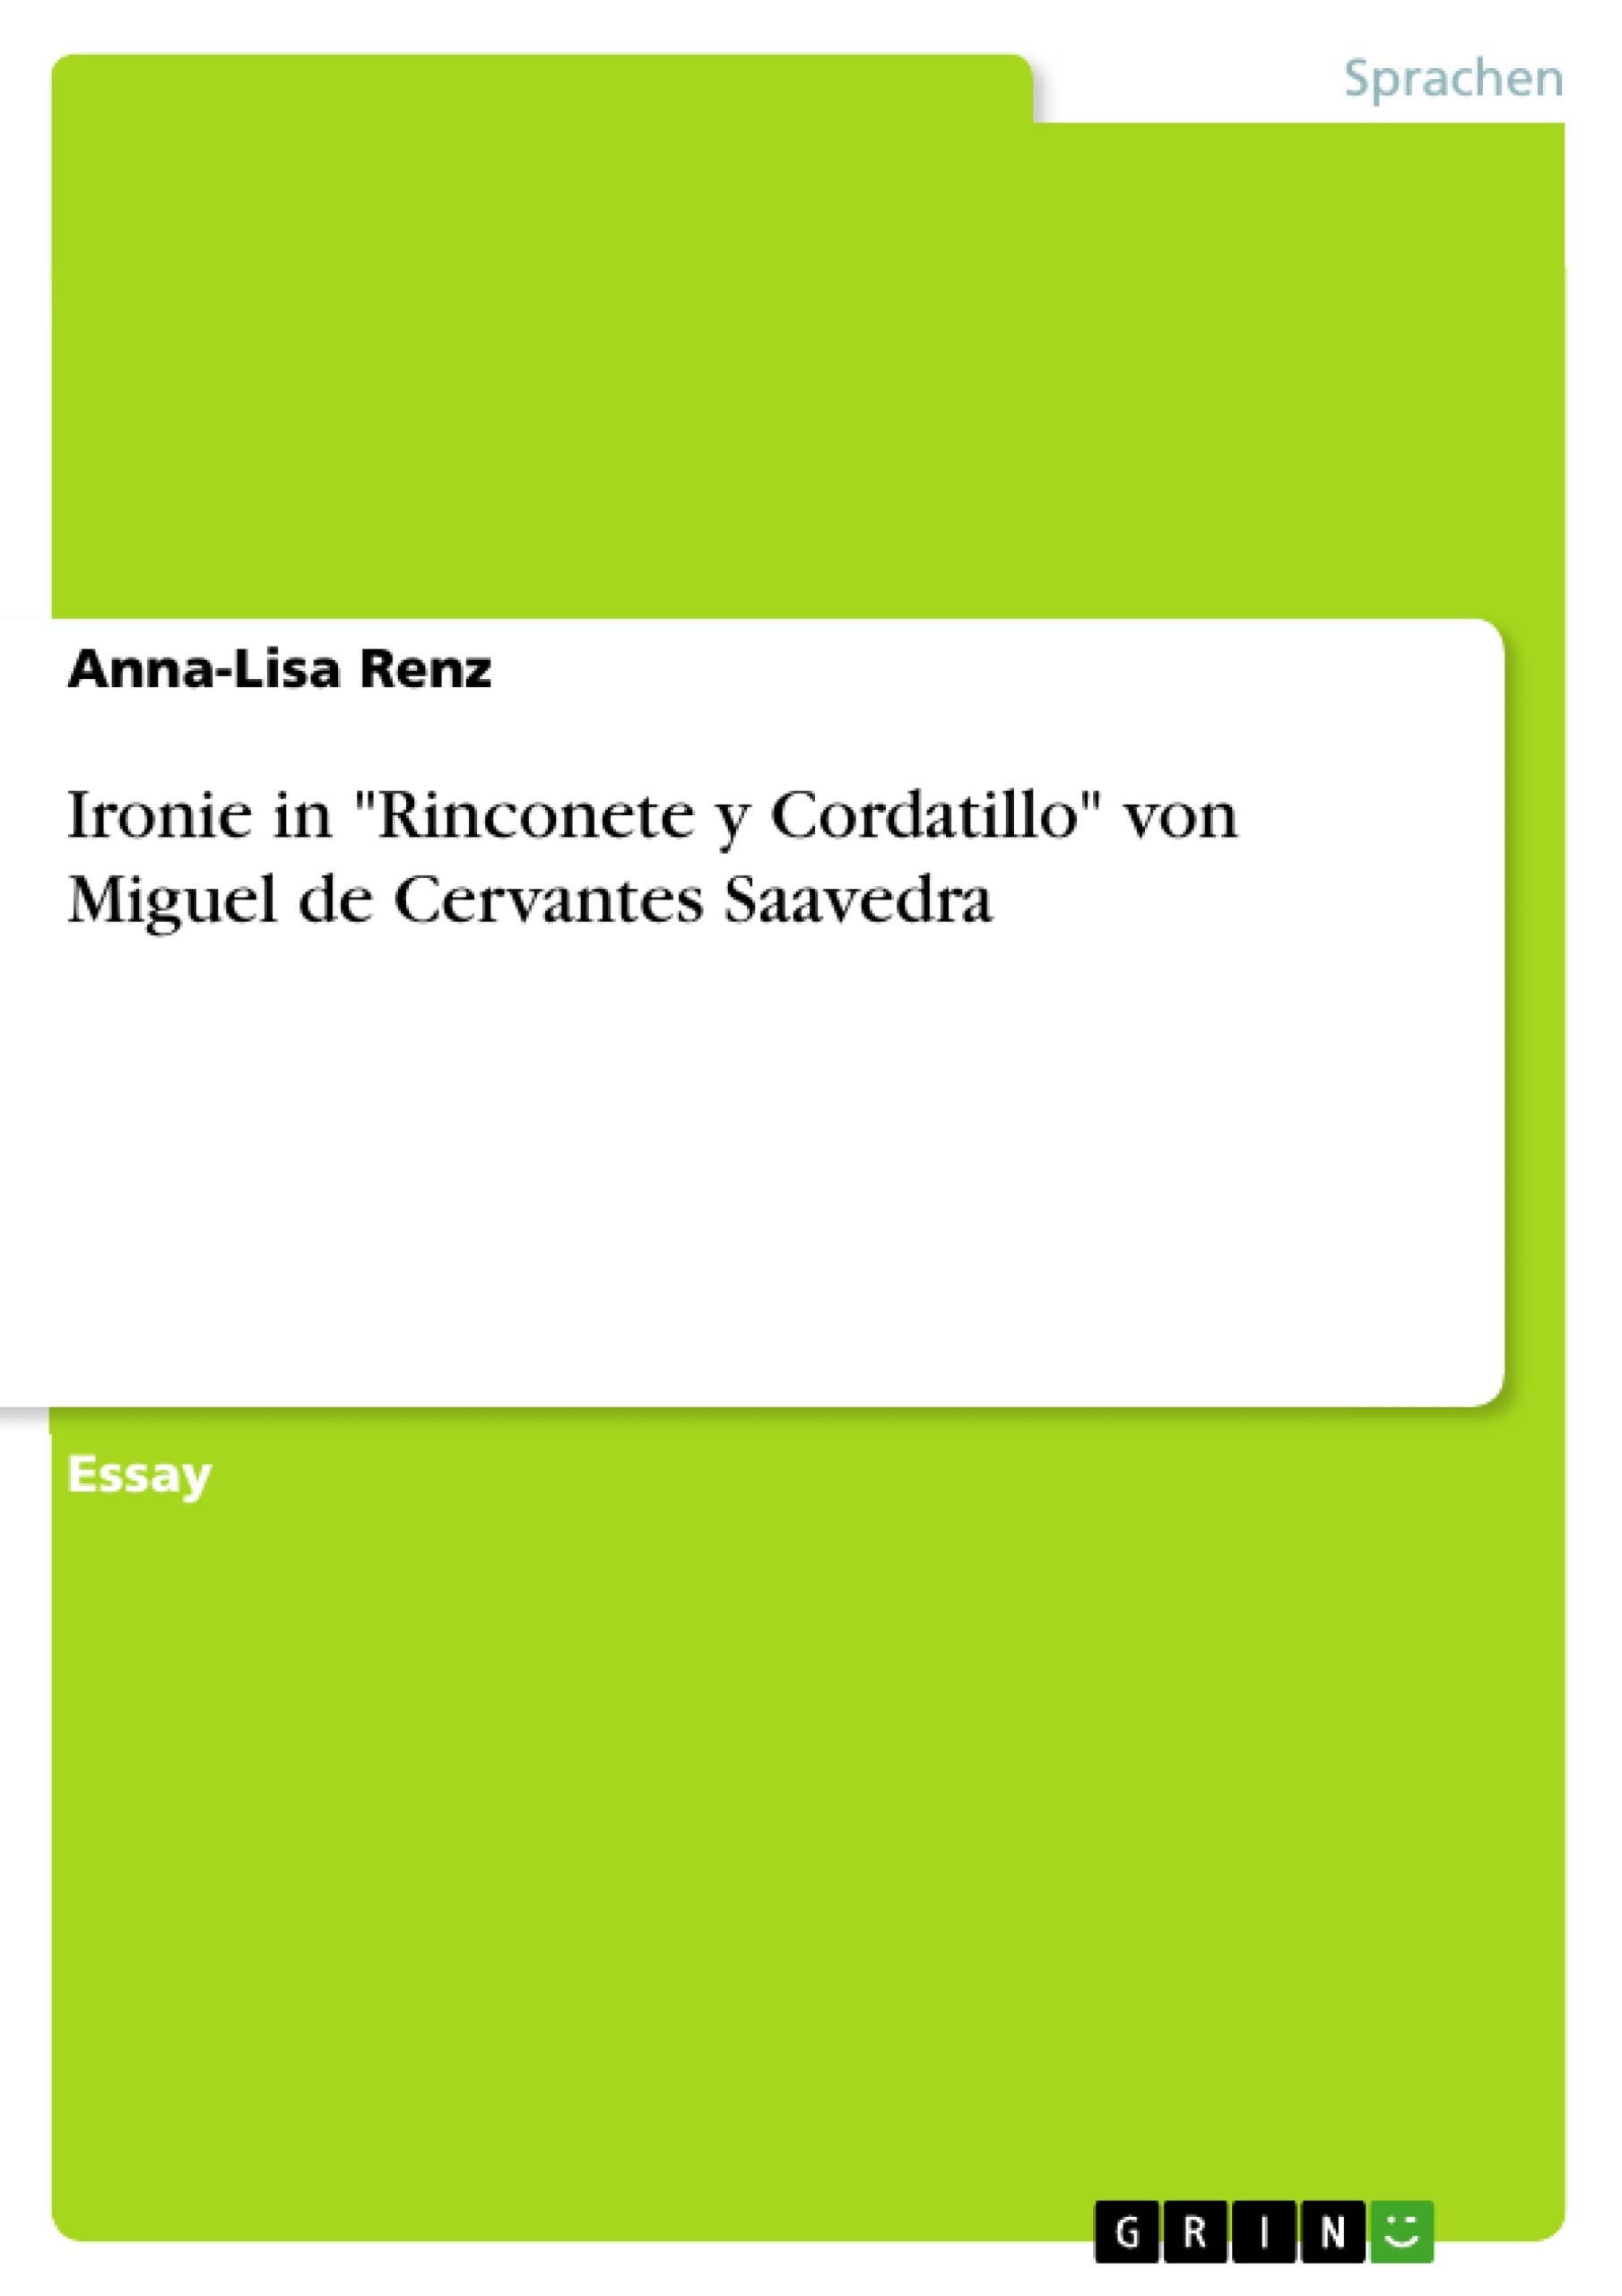 Titre: Ironie in "Rinconete y Cordatillo" von Miguel de Cervantes Saavedra